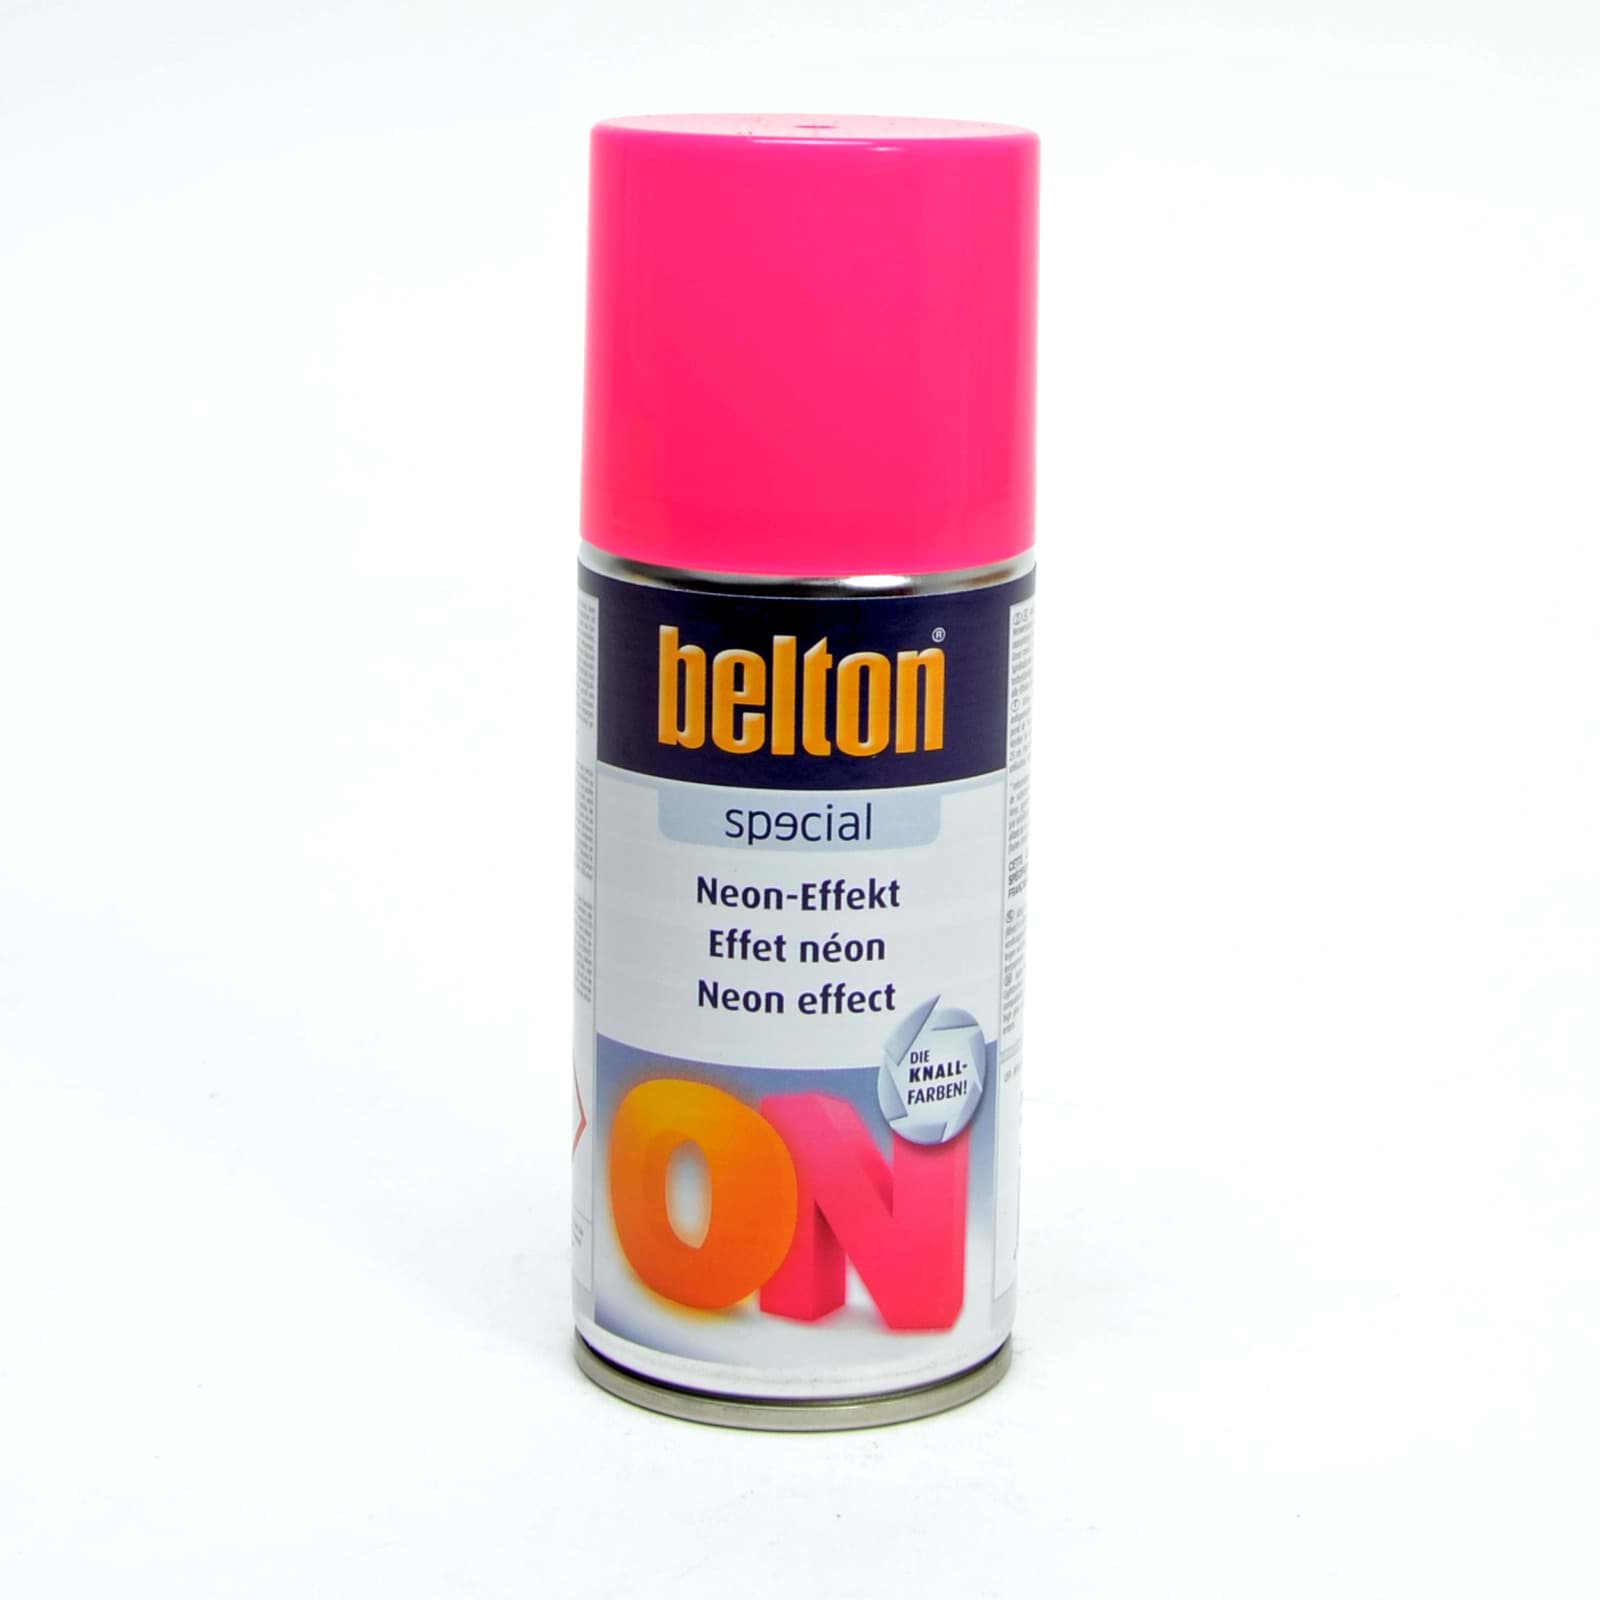 Belton SPECIAL NEON-EFFEKT PINK 150ml resmi